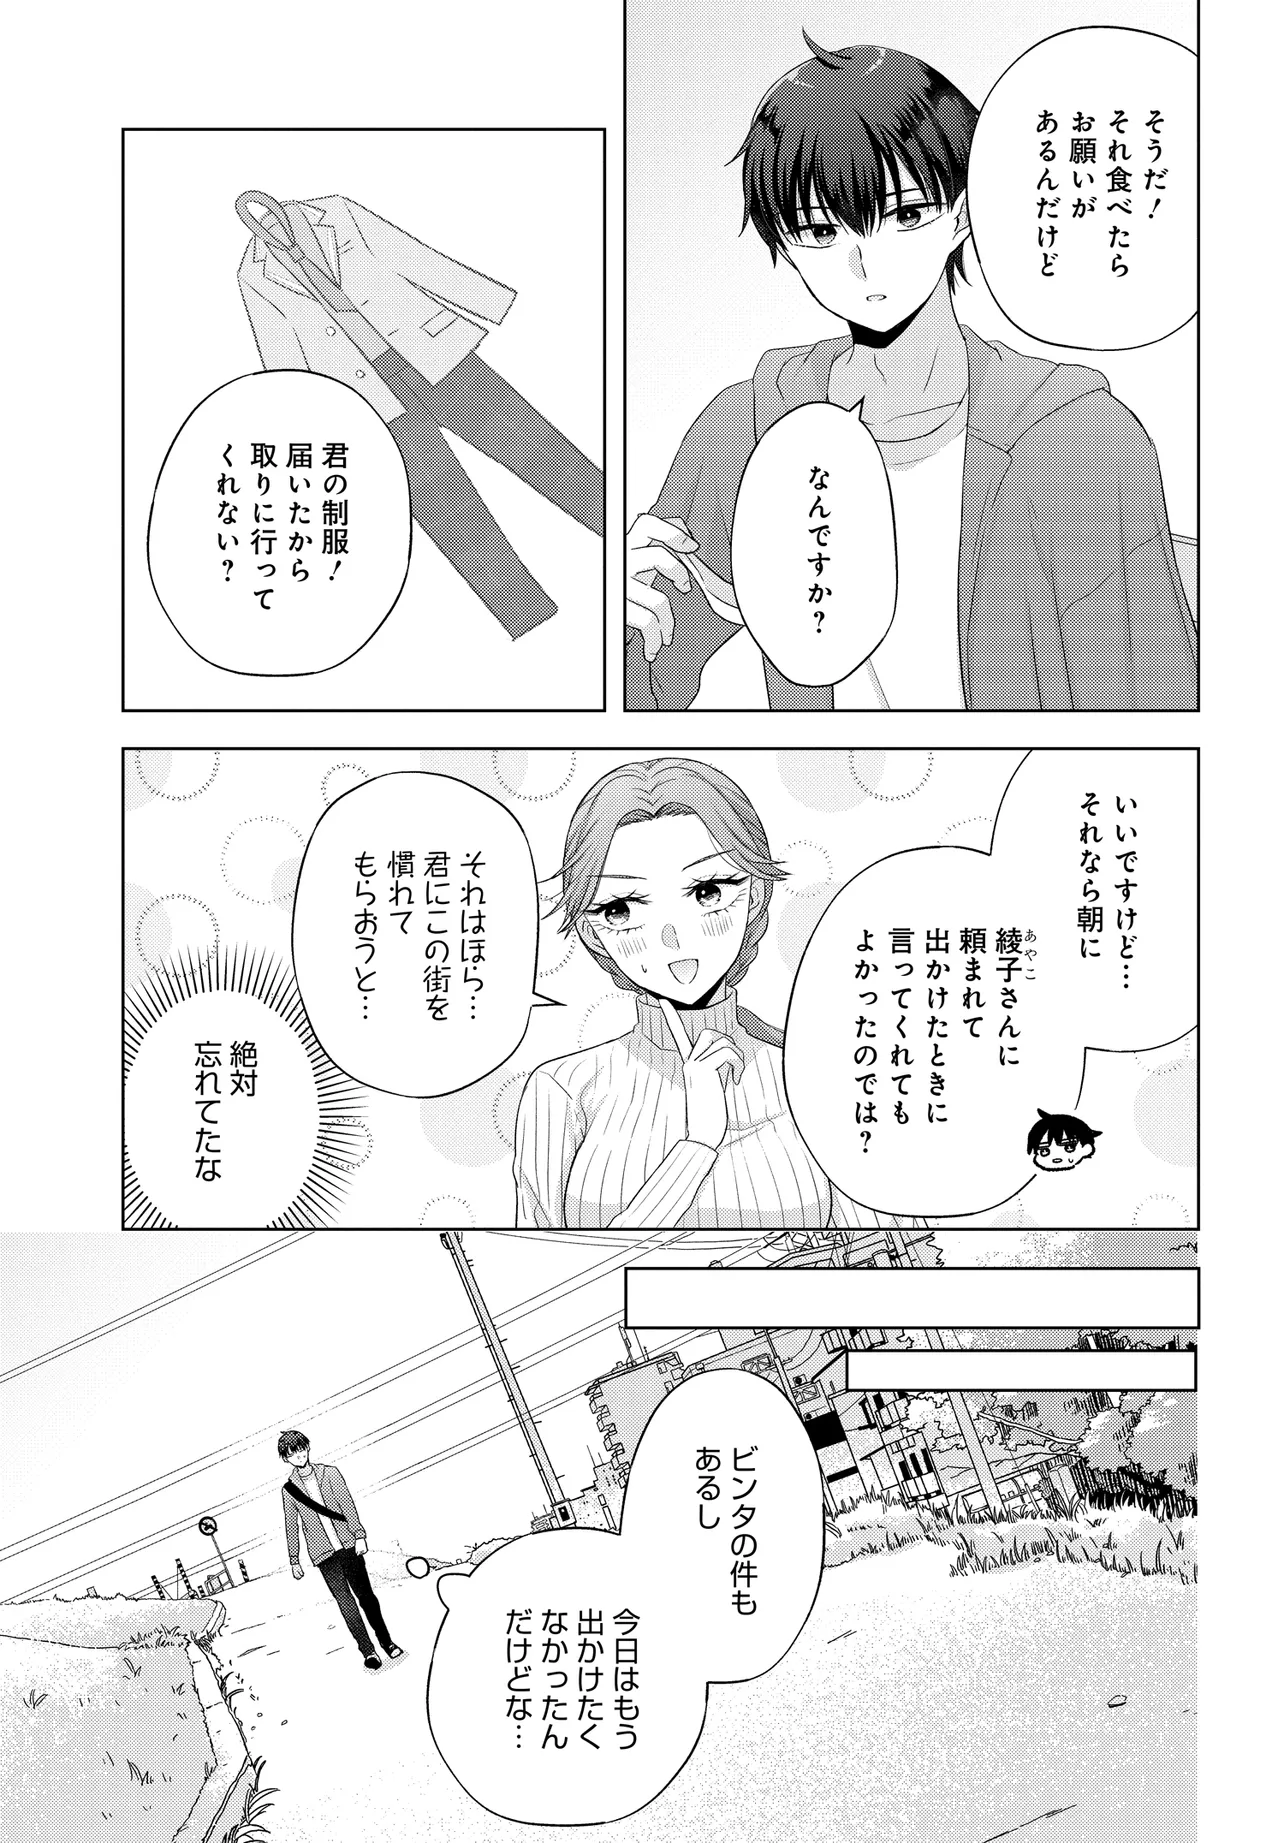 Suufun Go no Mirai ga Wakaru you ni Natta kedo, Onnagokoro wa Wakaranai. - Chapter 1 - Page 17